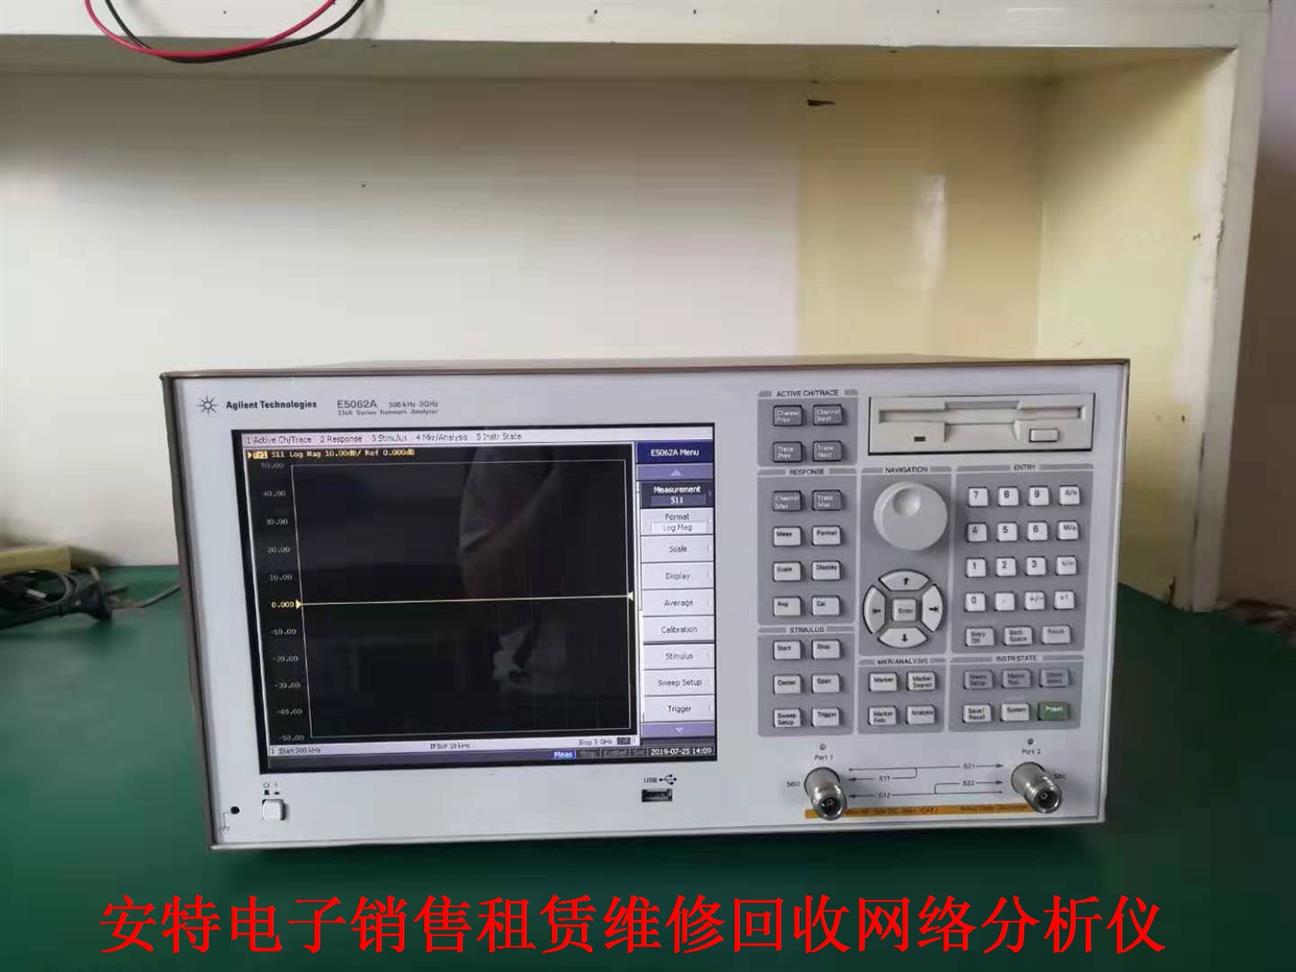 射頻網絡分析儀E5071C配件